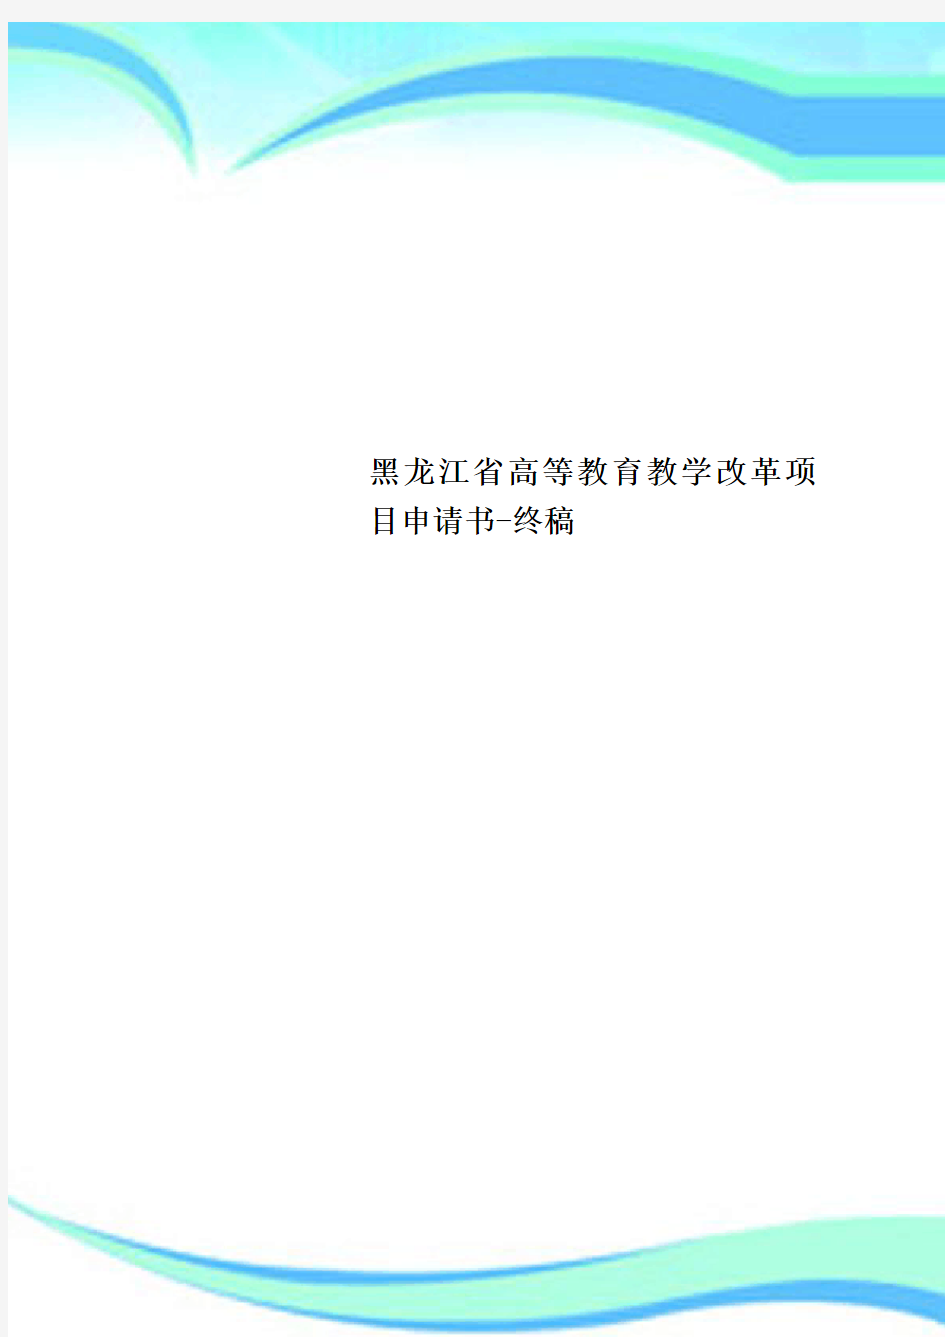 黑龙江省高等教育教学改革项目申请书-终稿